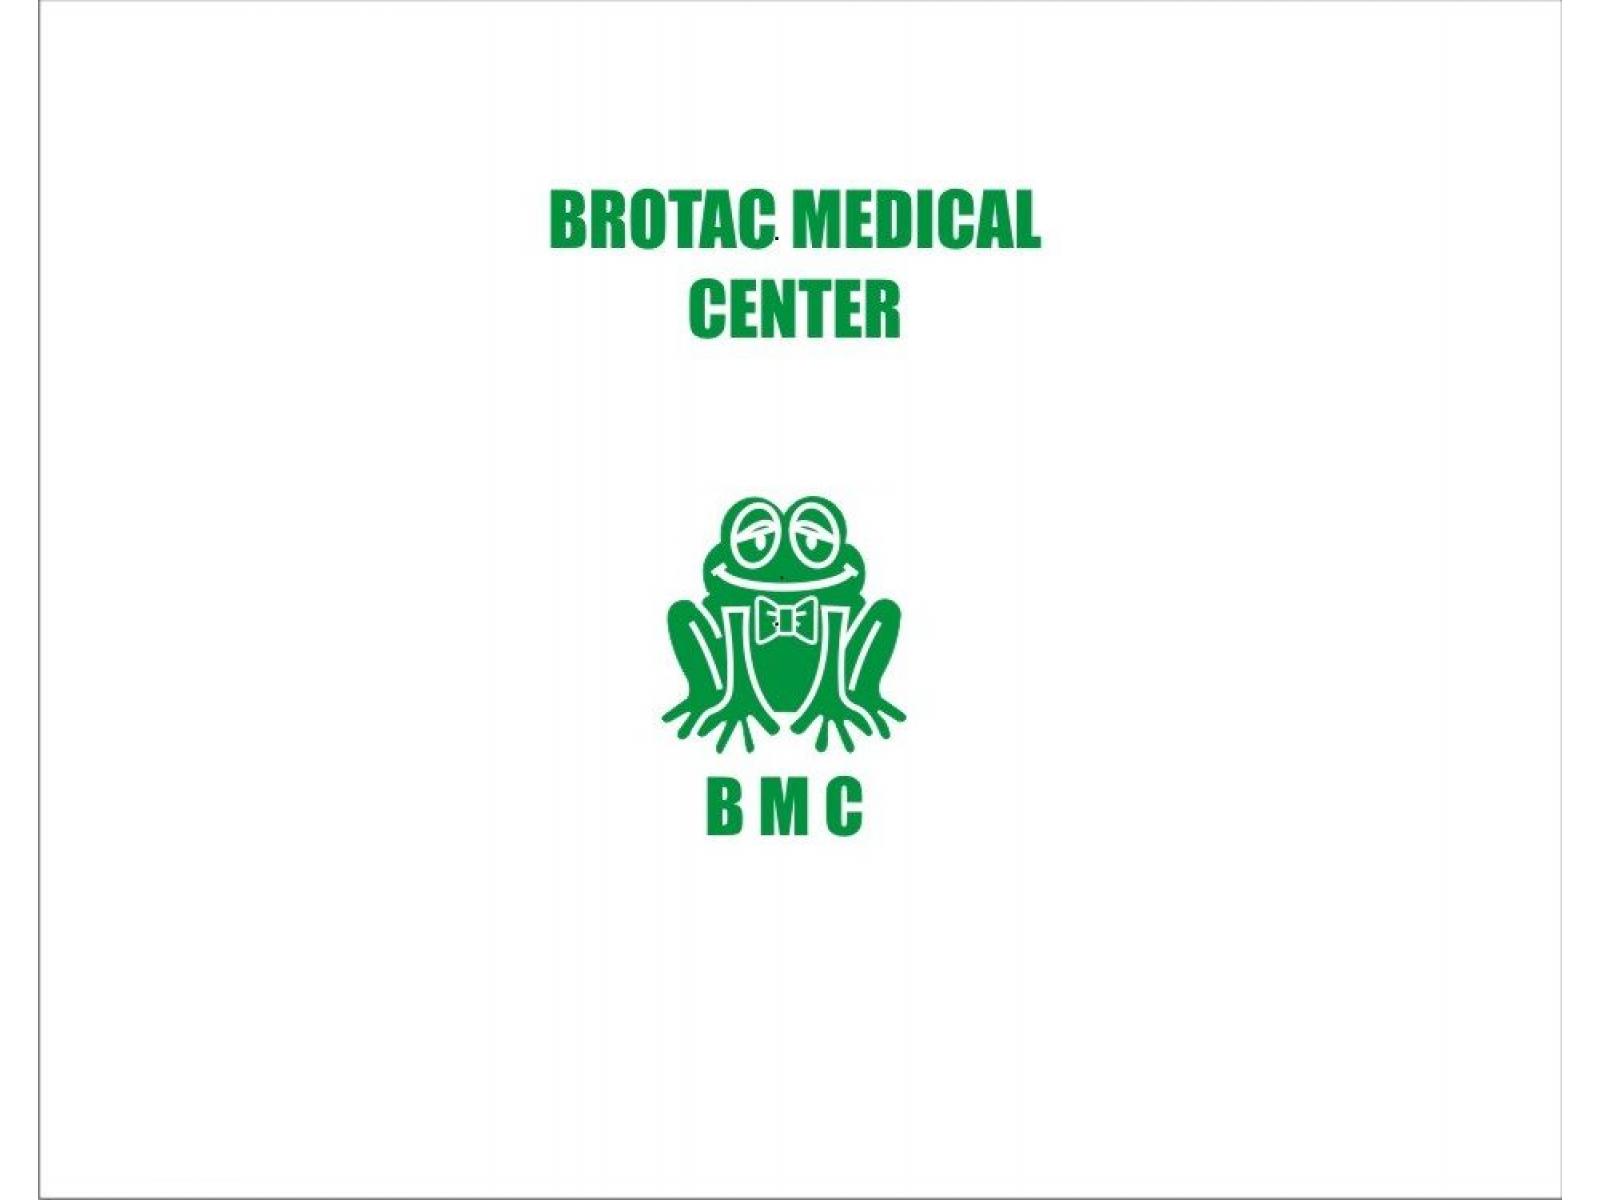 Brotac Medical Center - BROTAC_SIGLA.jpg